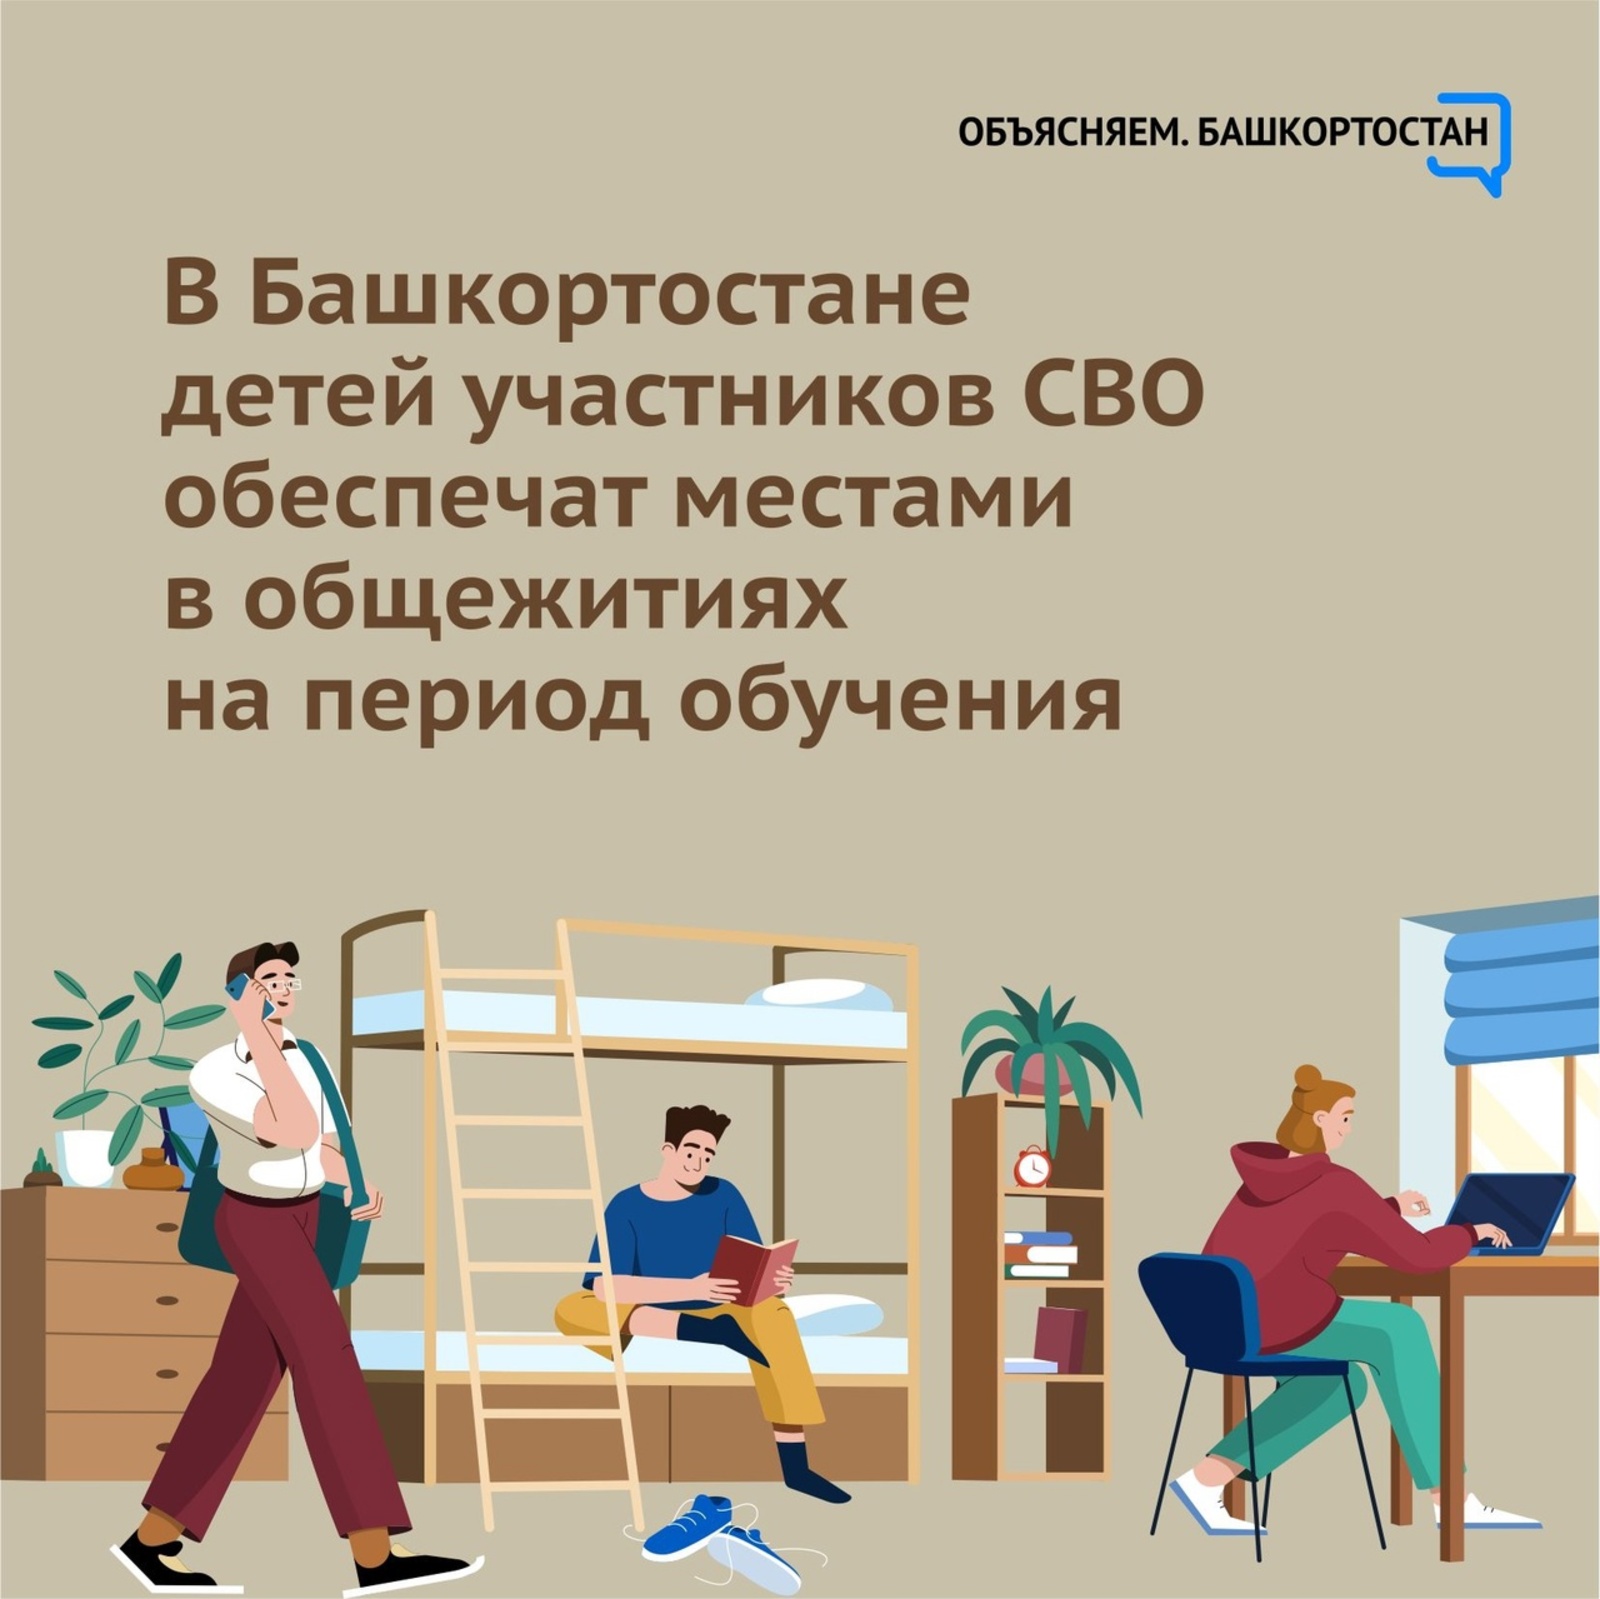 В Башкортостане детей участников СВО обеспечат местами в общежитиях на период обучения